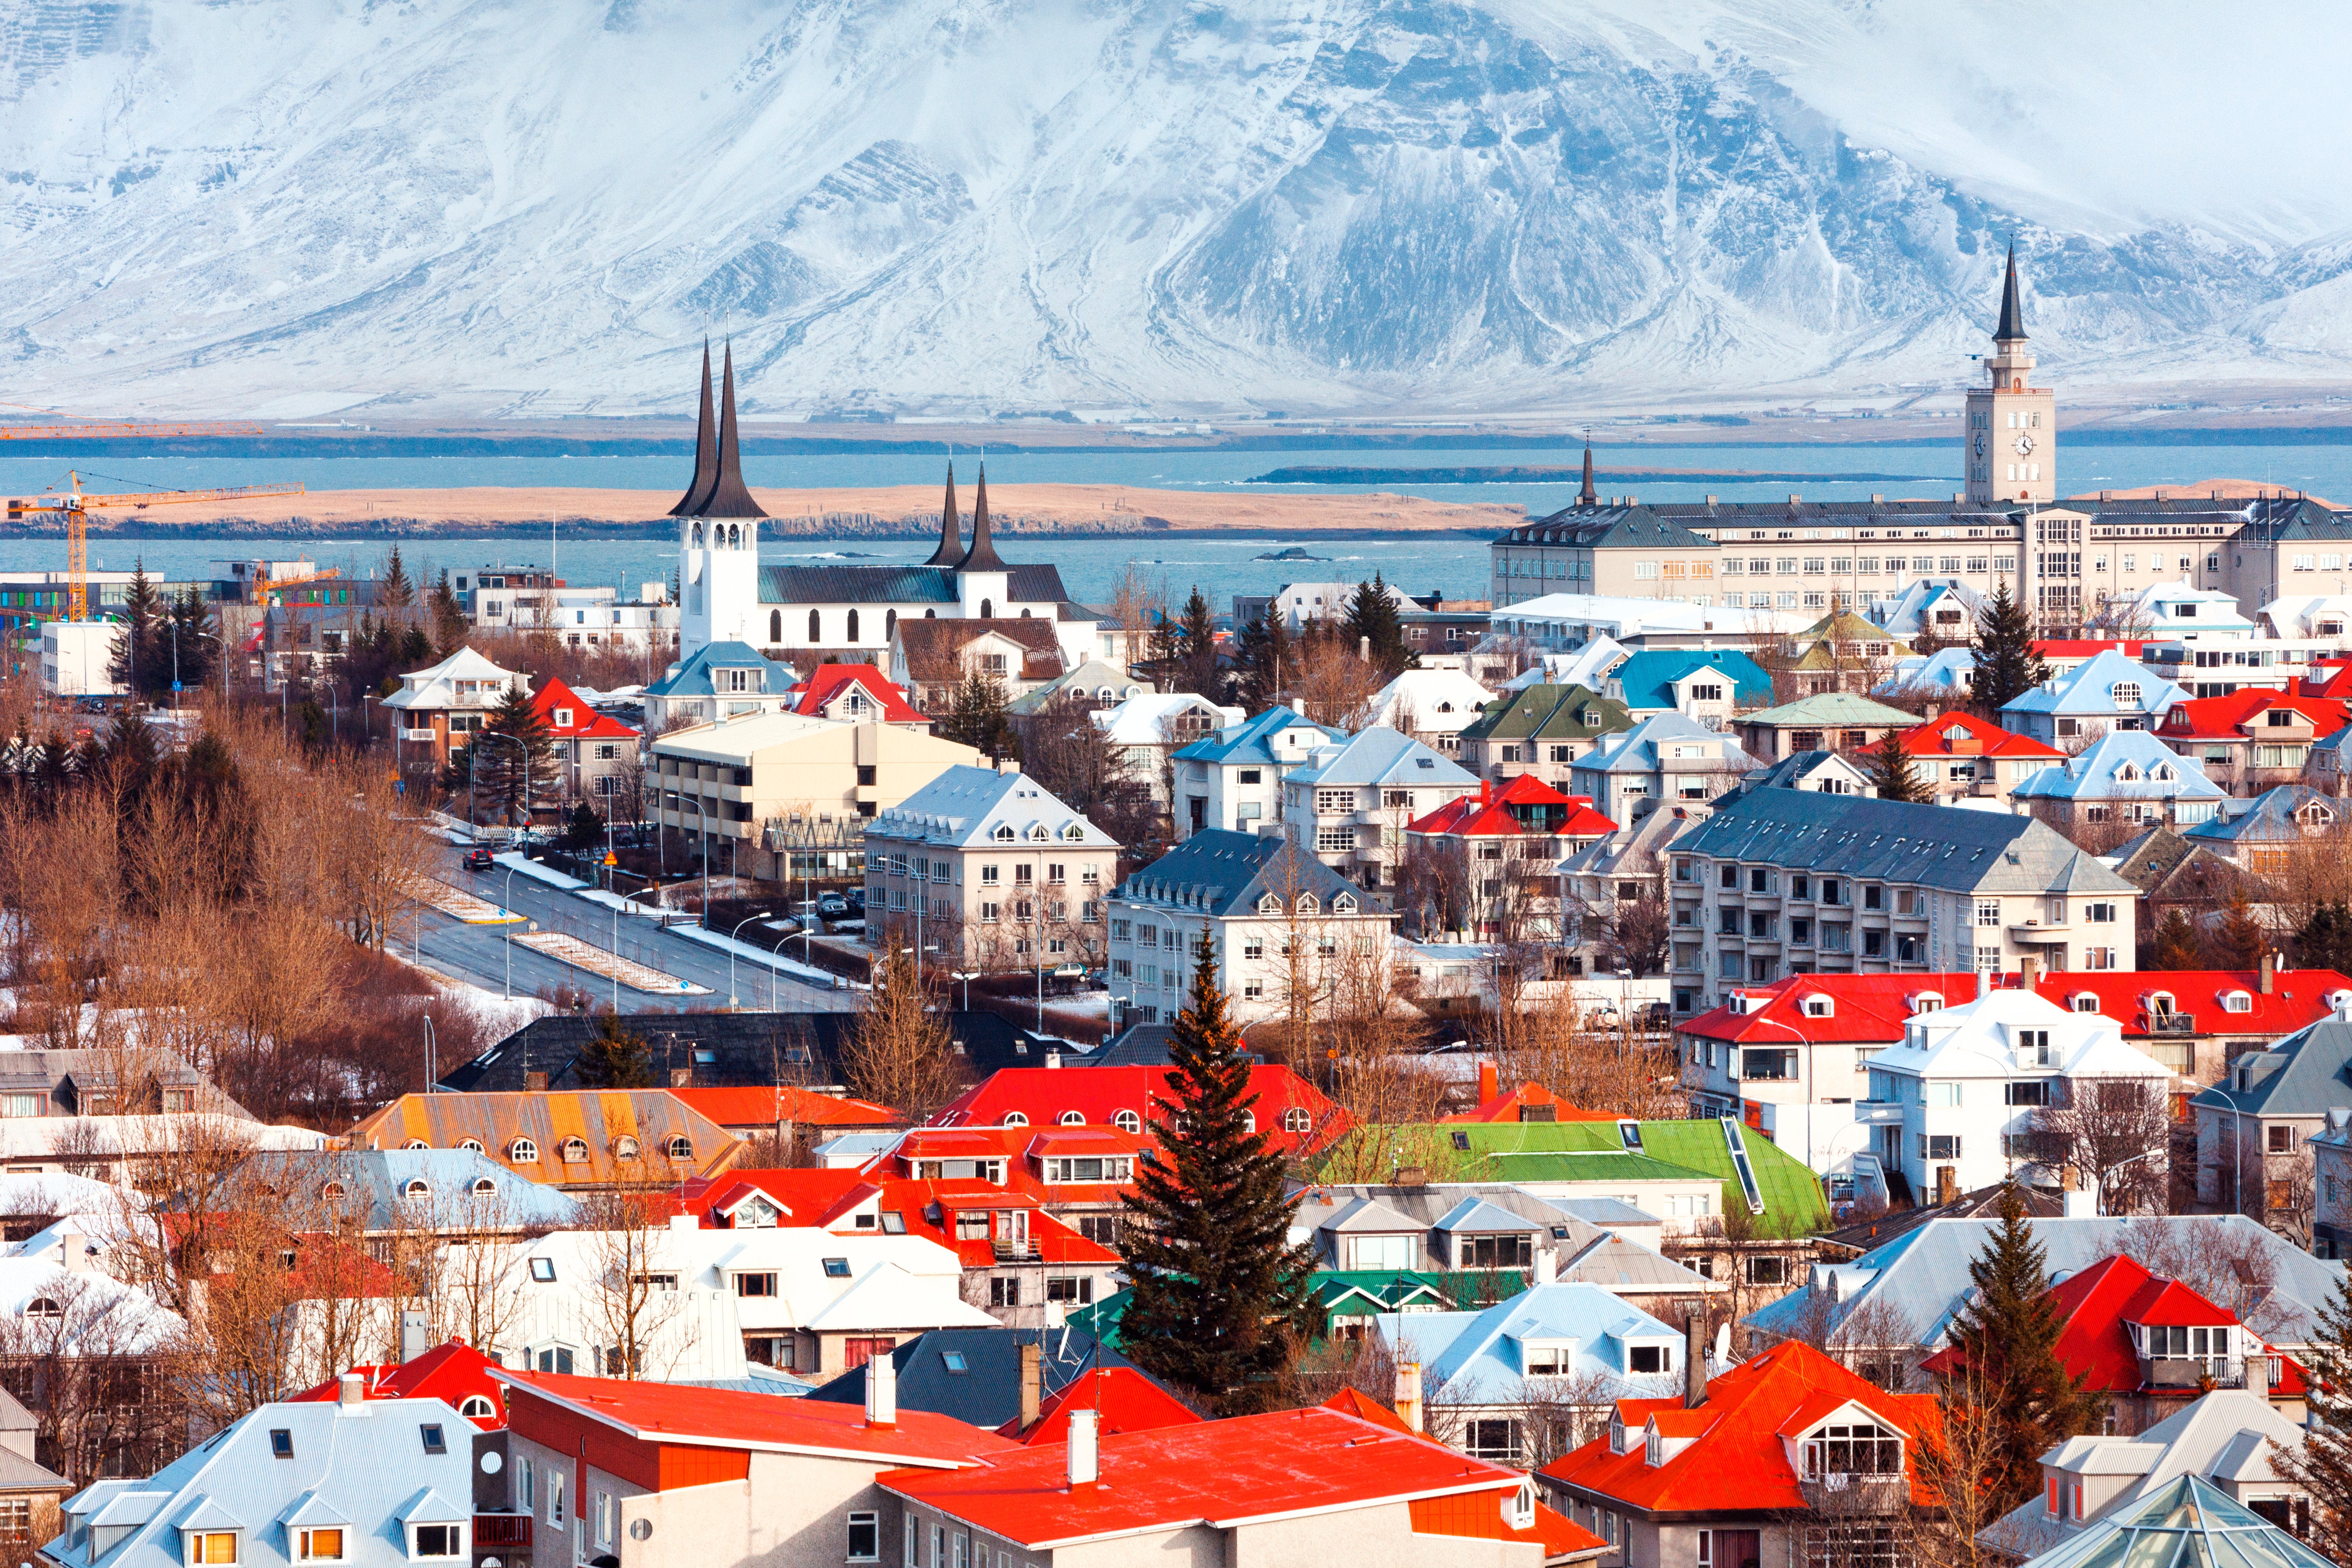 Visit the cityscape of Reykjavík, Iceland